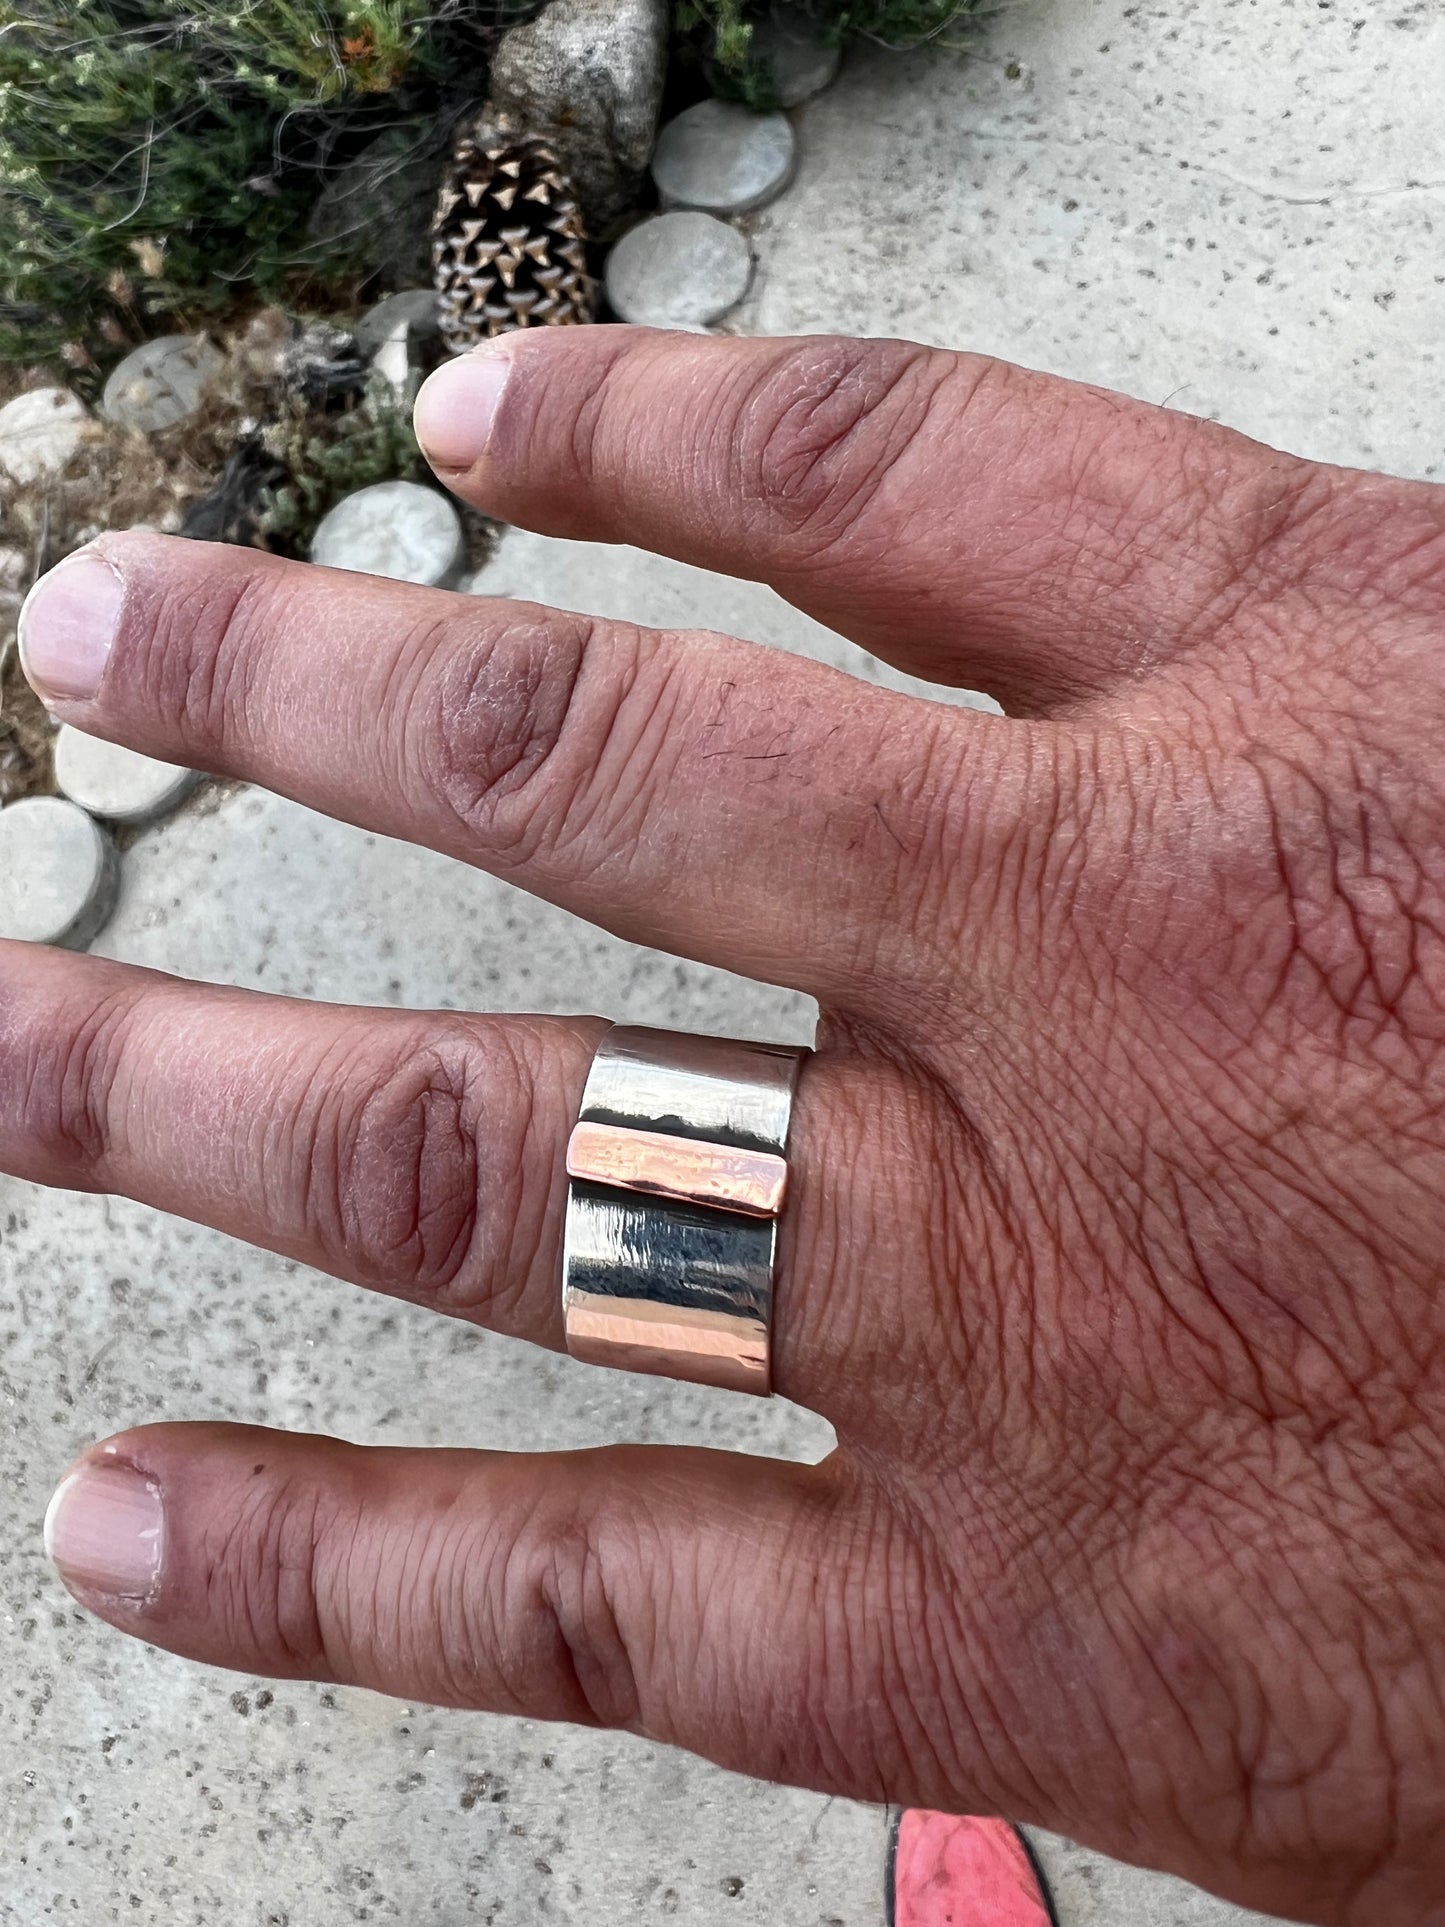 Man’s mixed metal ring — size 12